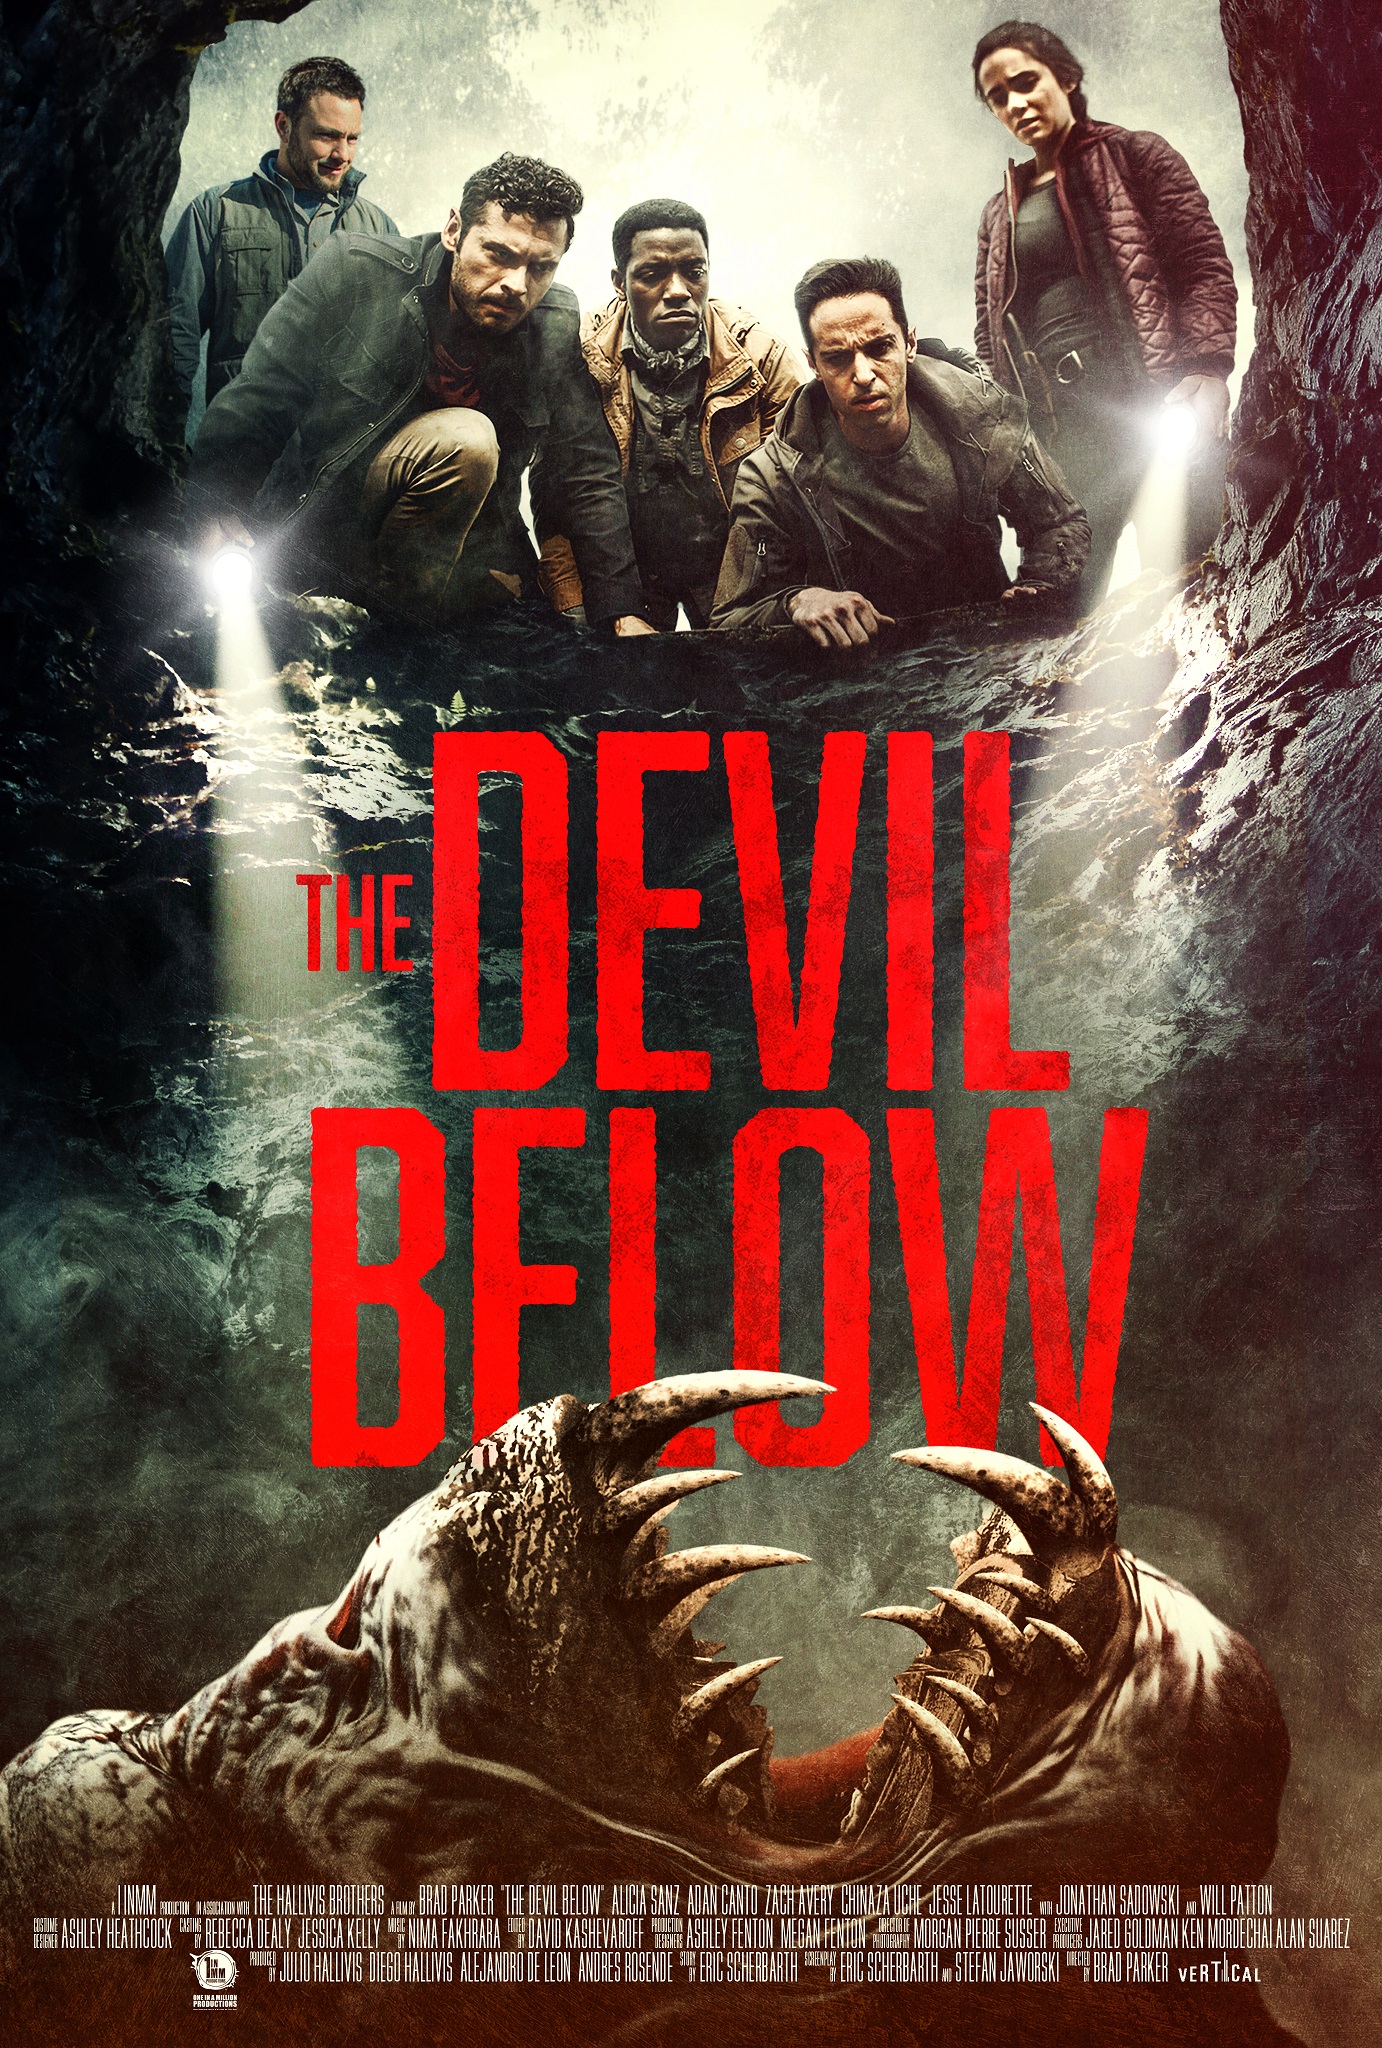 The Devil Below – Teaser Poster